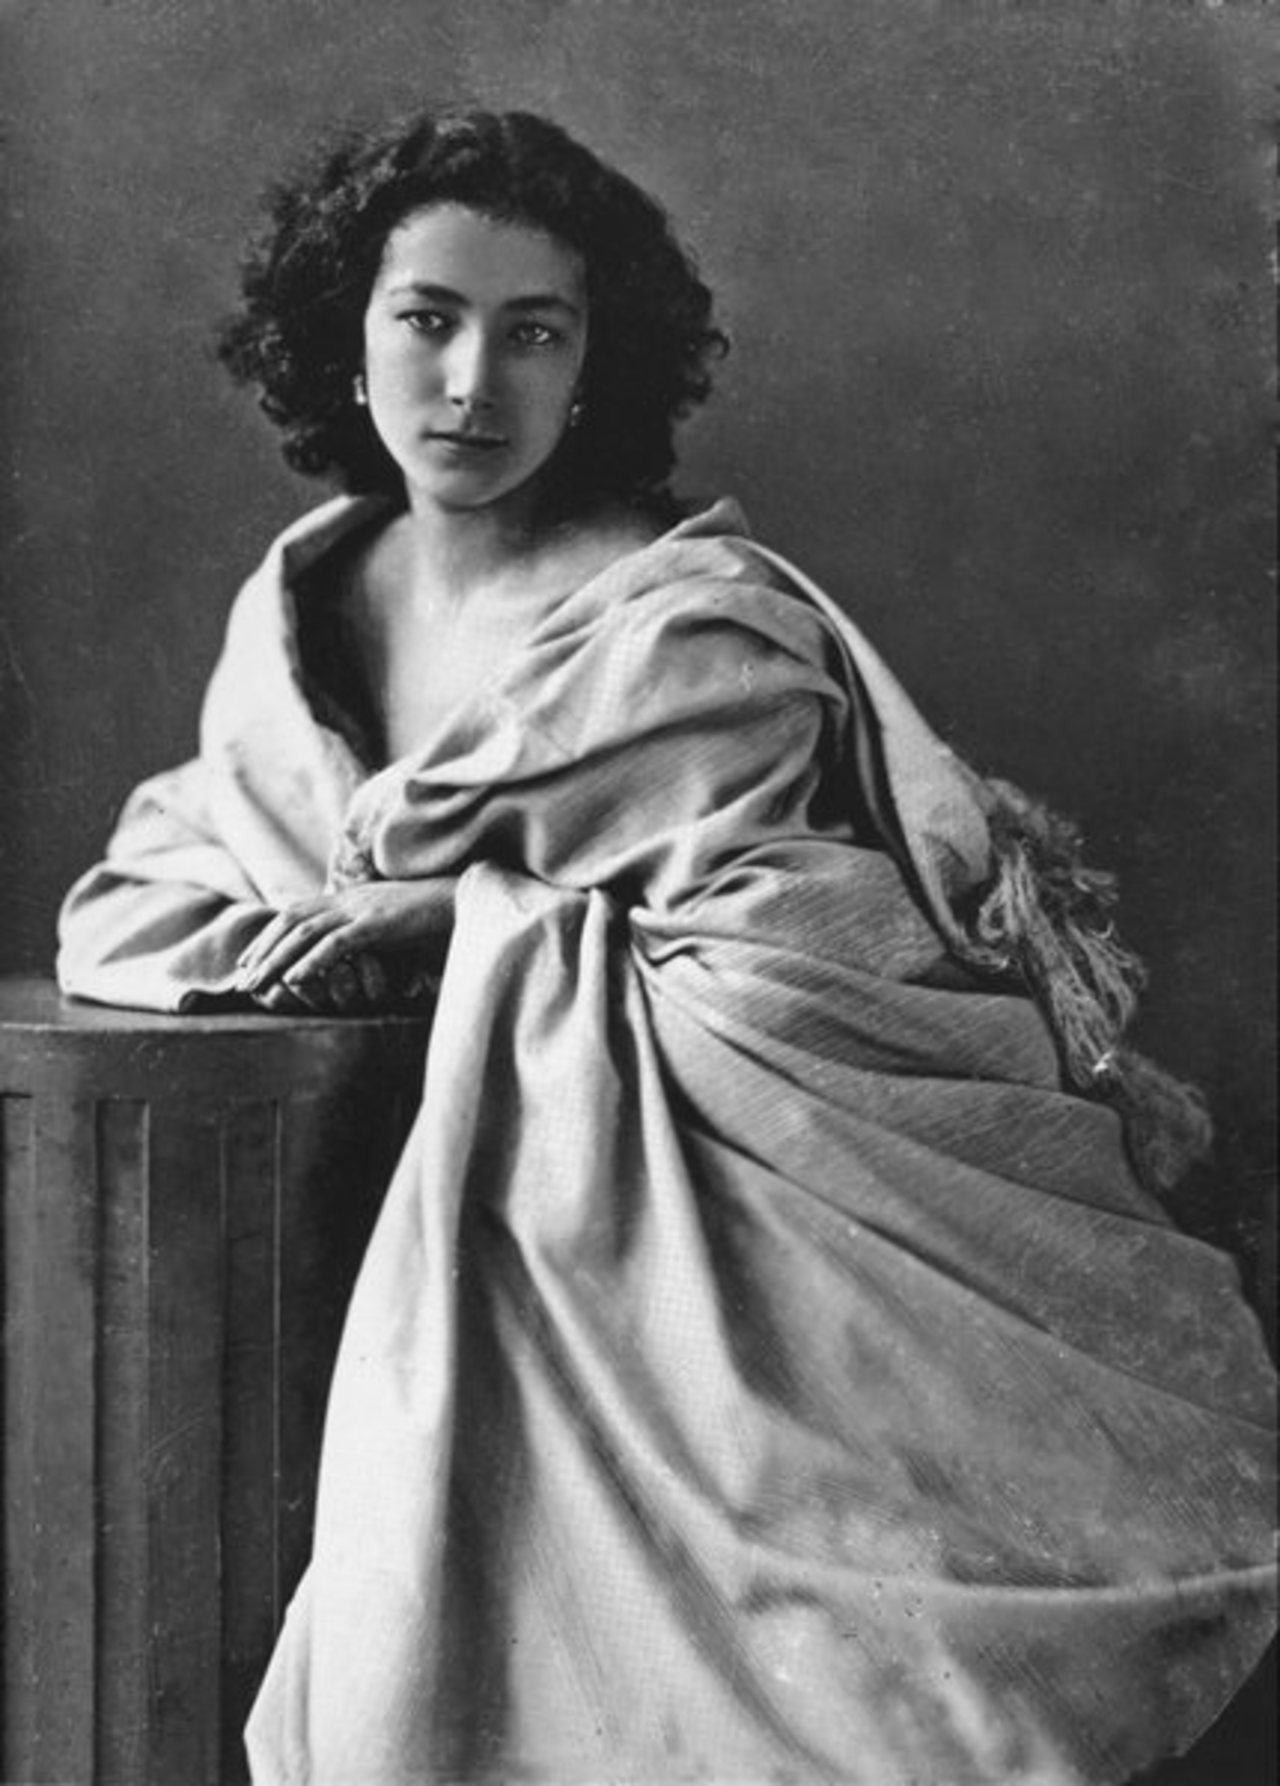 RT @Lo_Shardana: RT "@f_royer: Sarah Bernhardt 1844-1923 / Bernadette Elisabeth / Photos / Portrait par Nadar http://t.co/sJoAV2op4f"